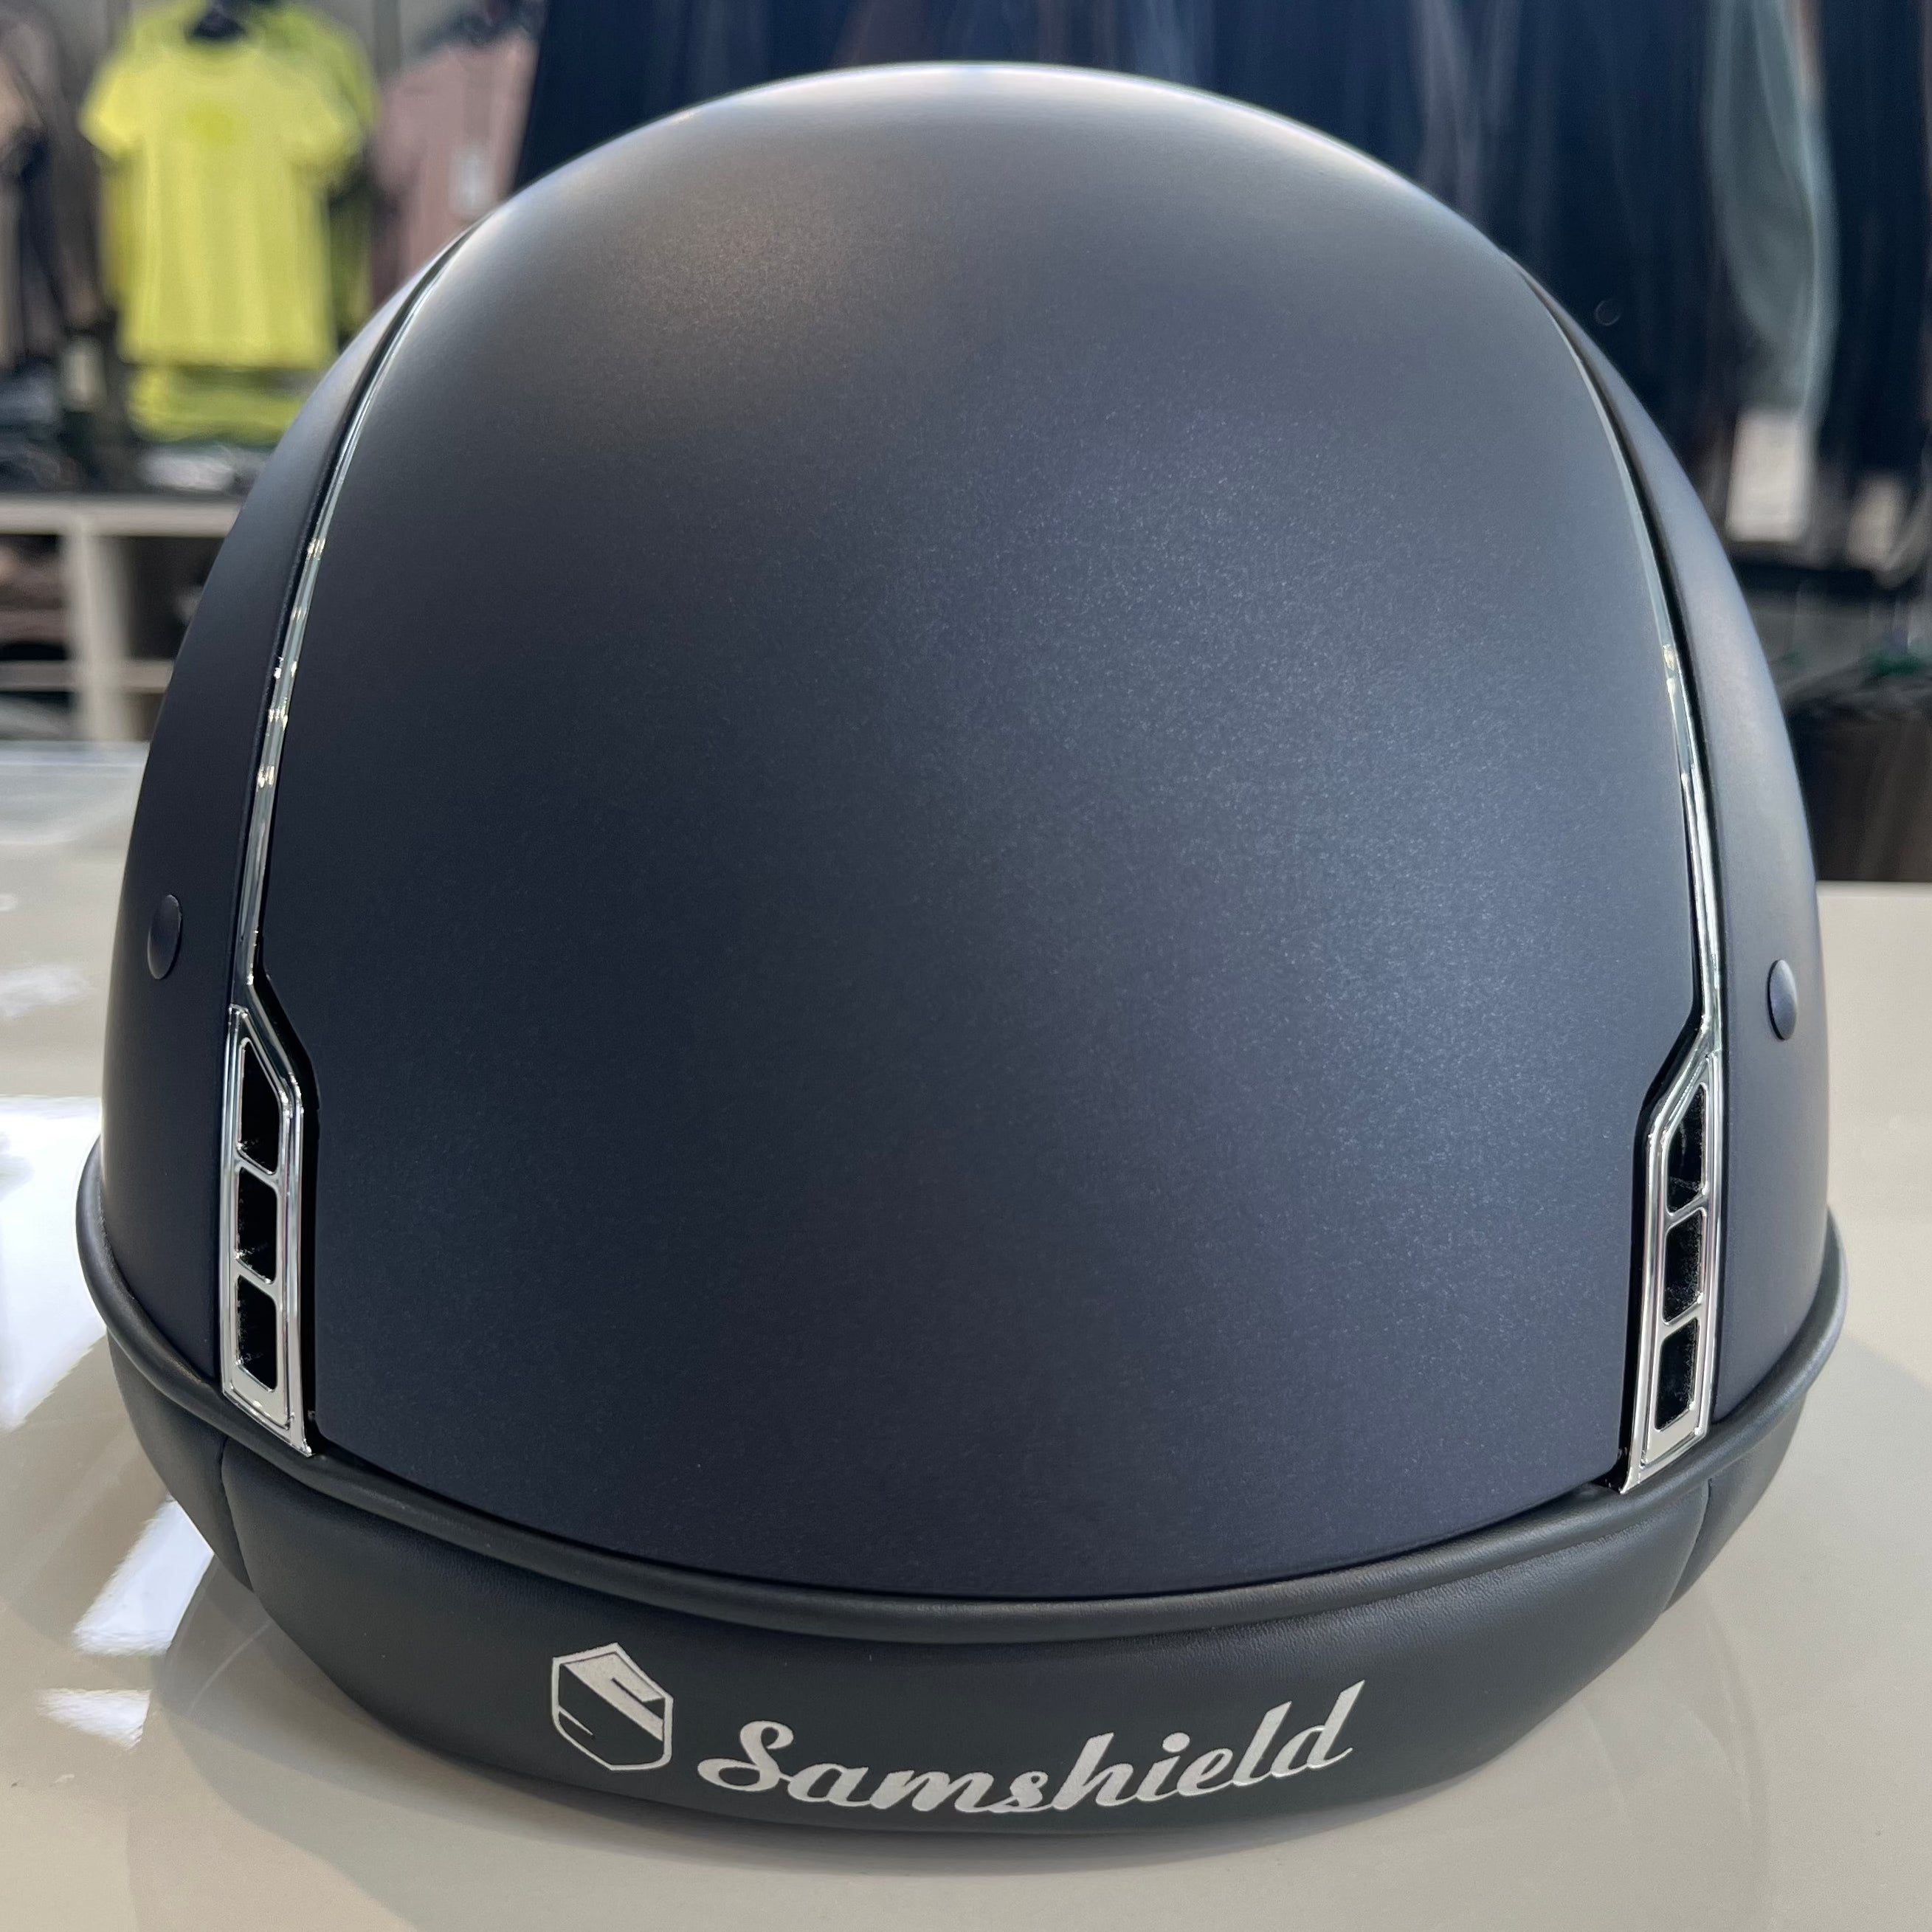 Samshield Shadowmatt 1.0 Navy- in stock and ready to ship!